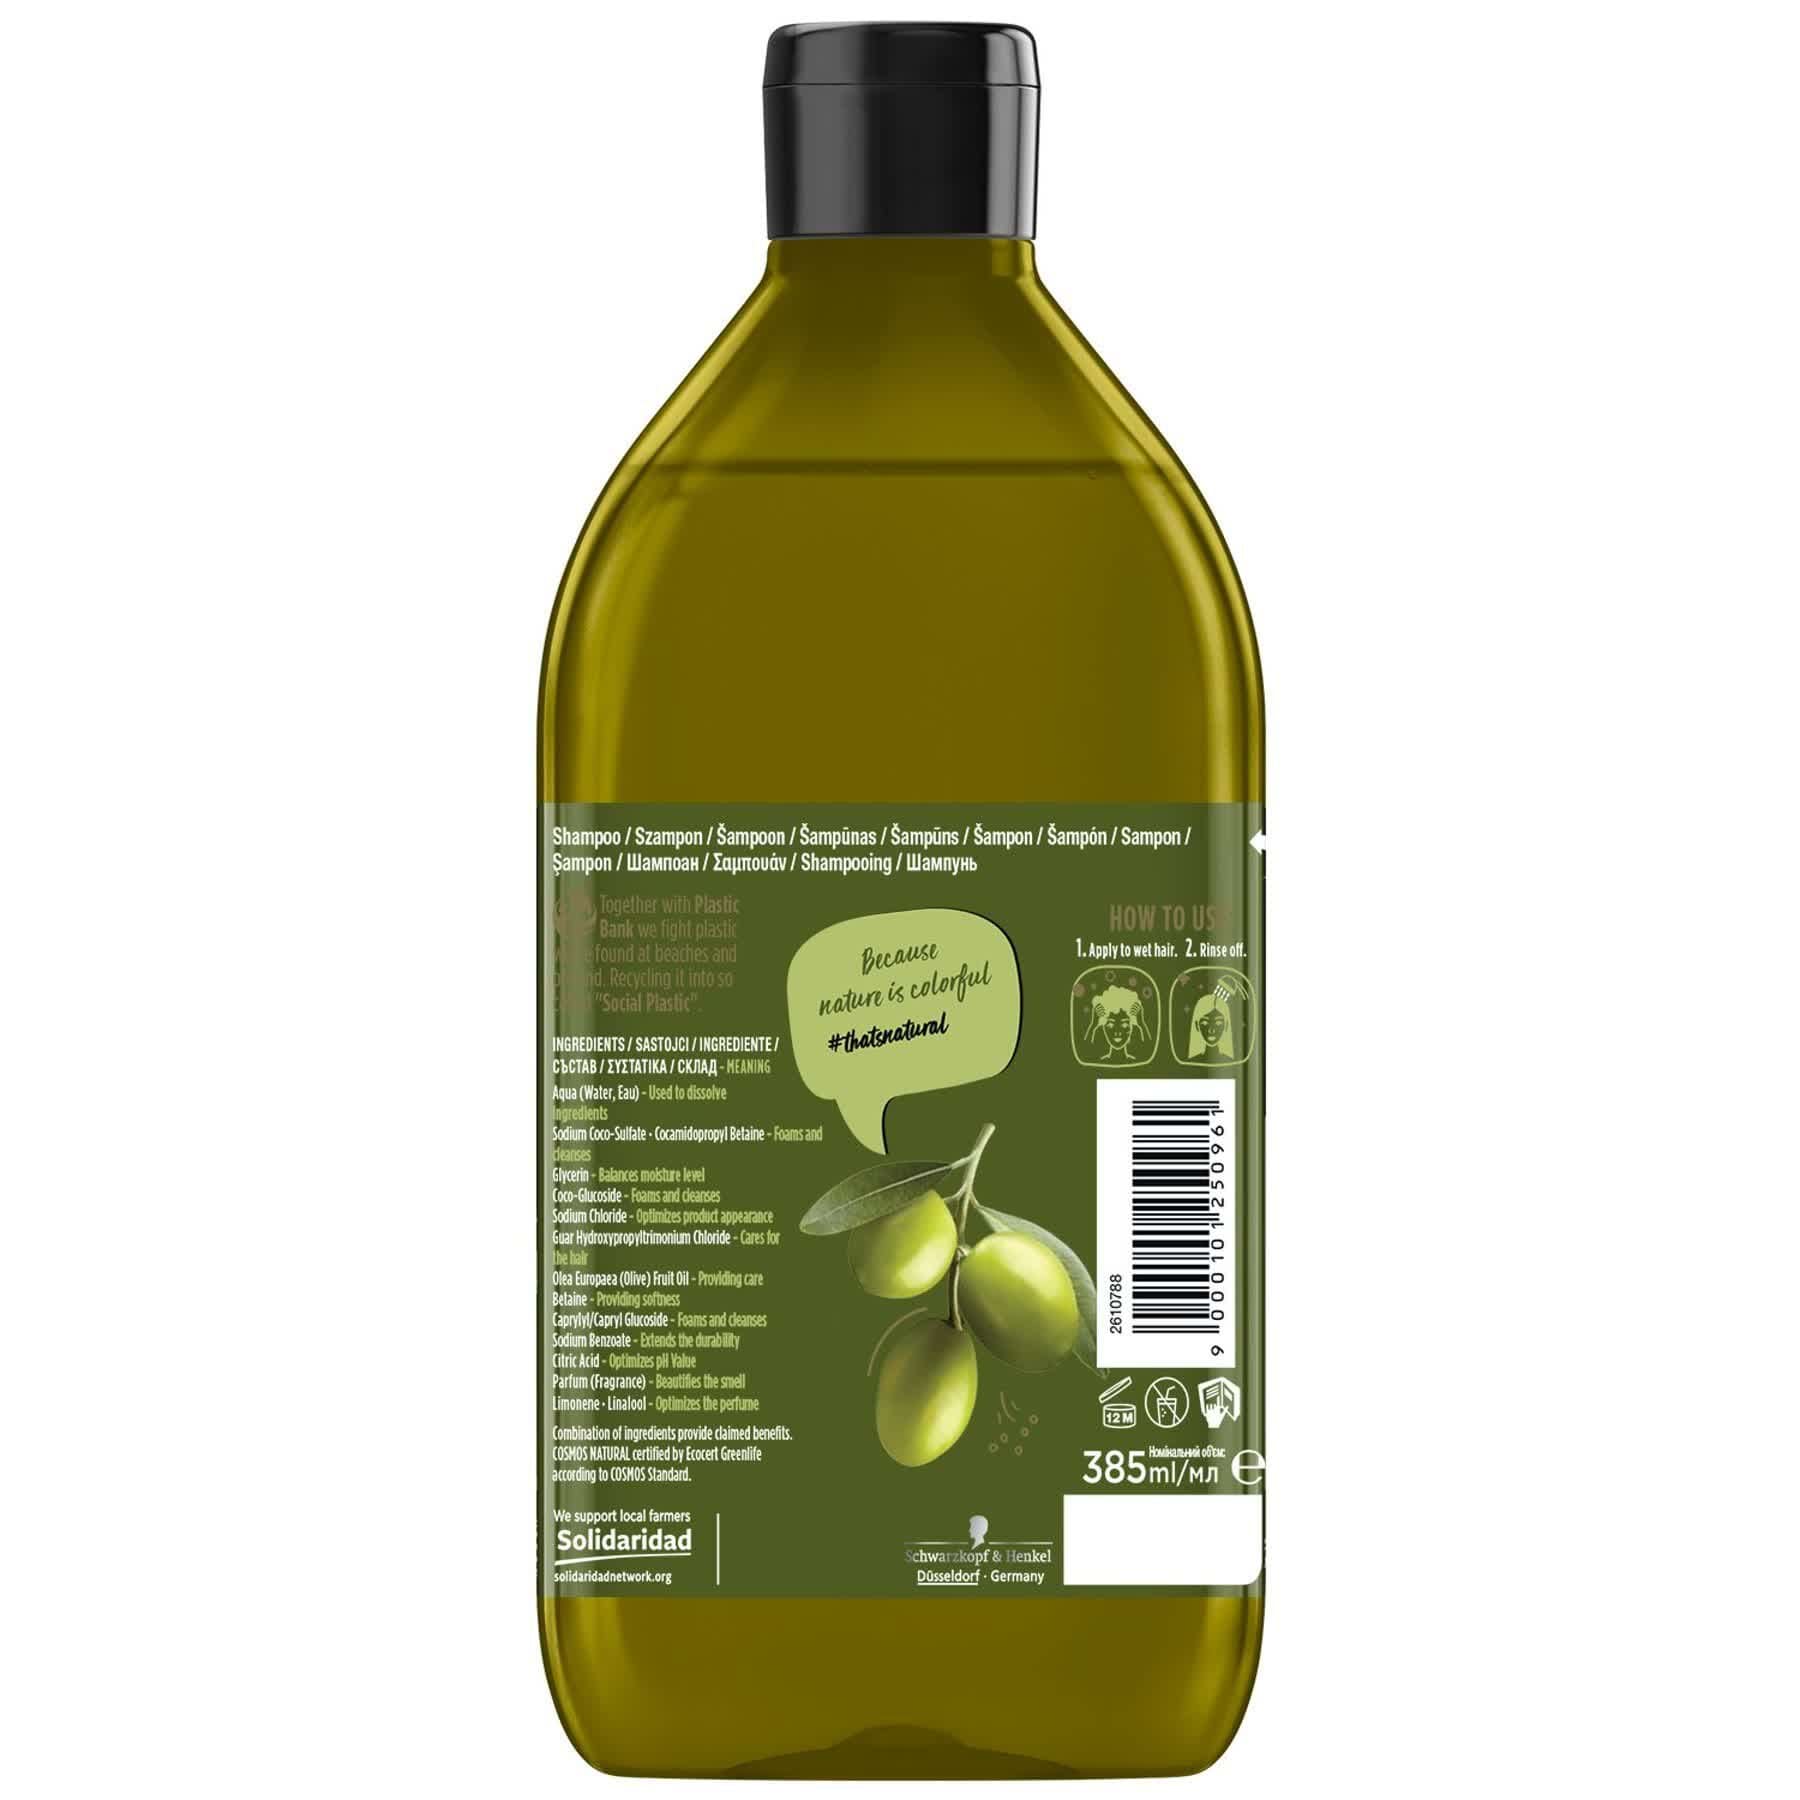 Шампунь Nature Box для укрепления длинных волос и противодействия ломкости с оливковым маслом холодного отжима 385 мл